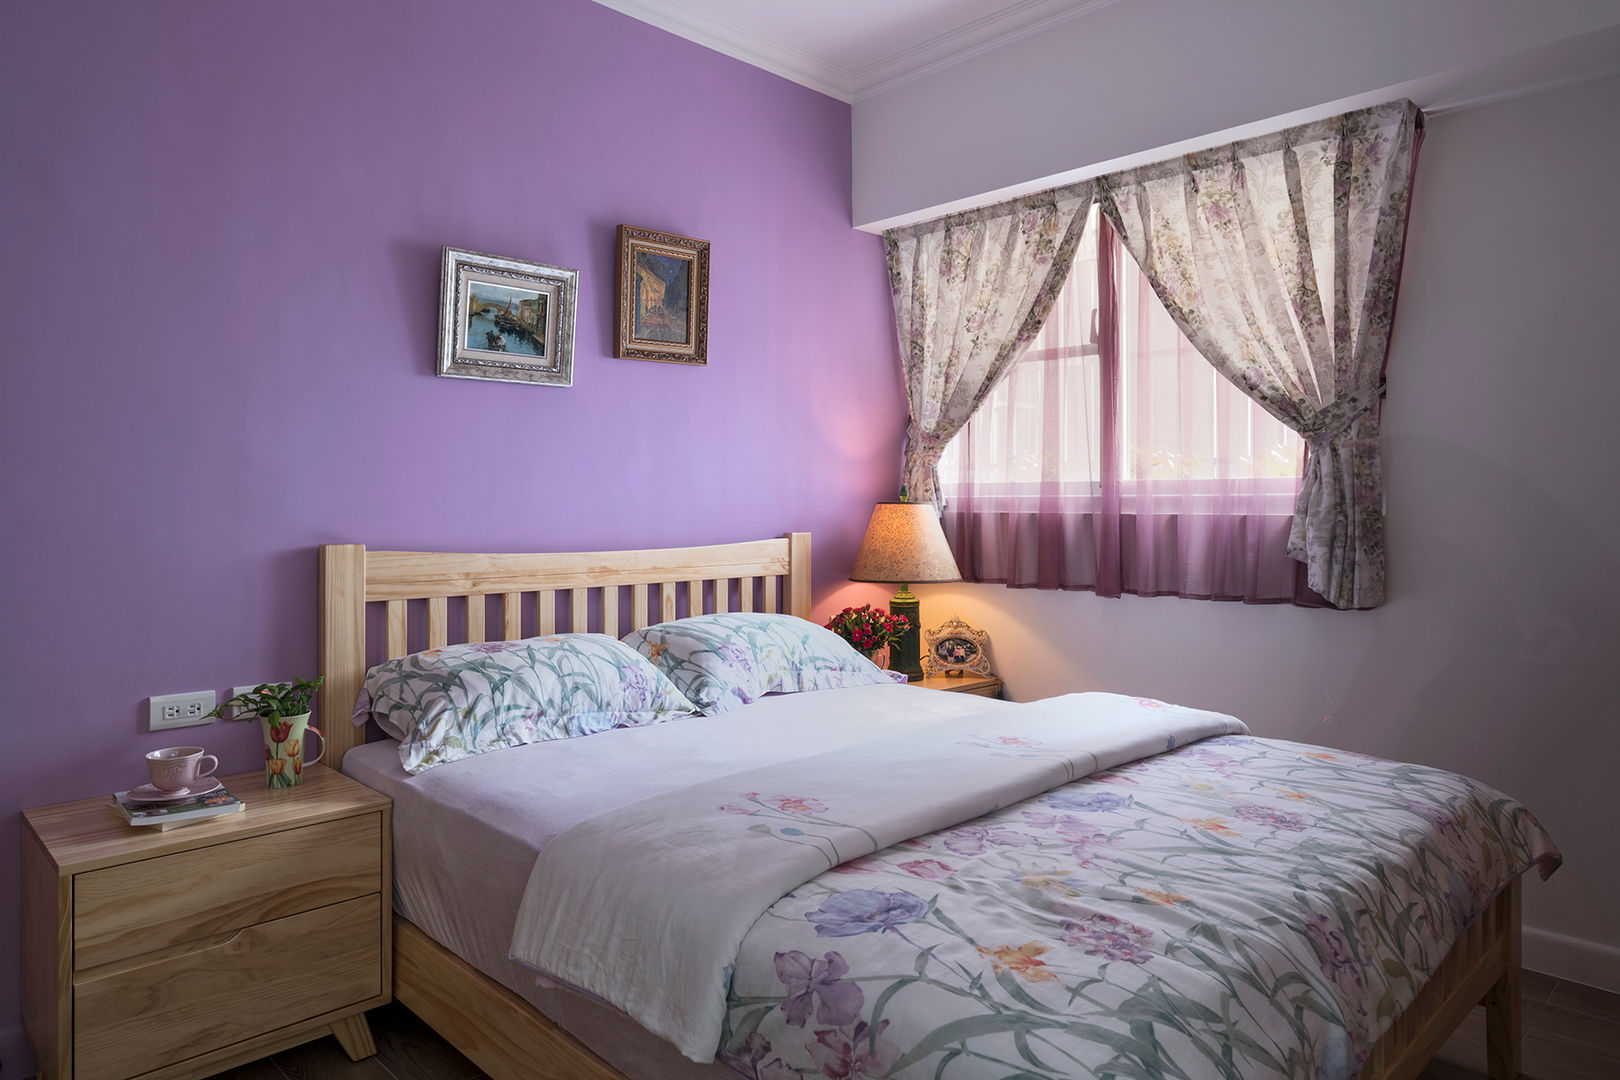 市區45年老屋華麗轉身 恬靜鄉村風, Color-Lotus Design Color-Lotus Design Bedroom Solid Wood Multicolored Beds & headboards